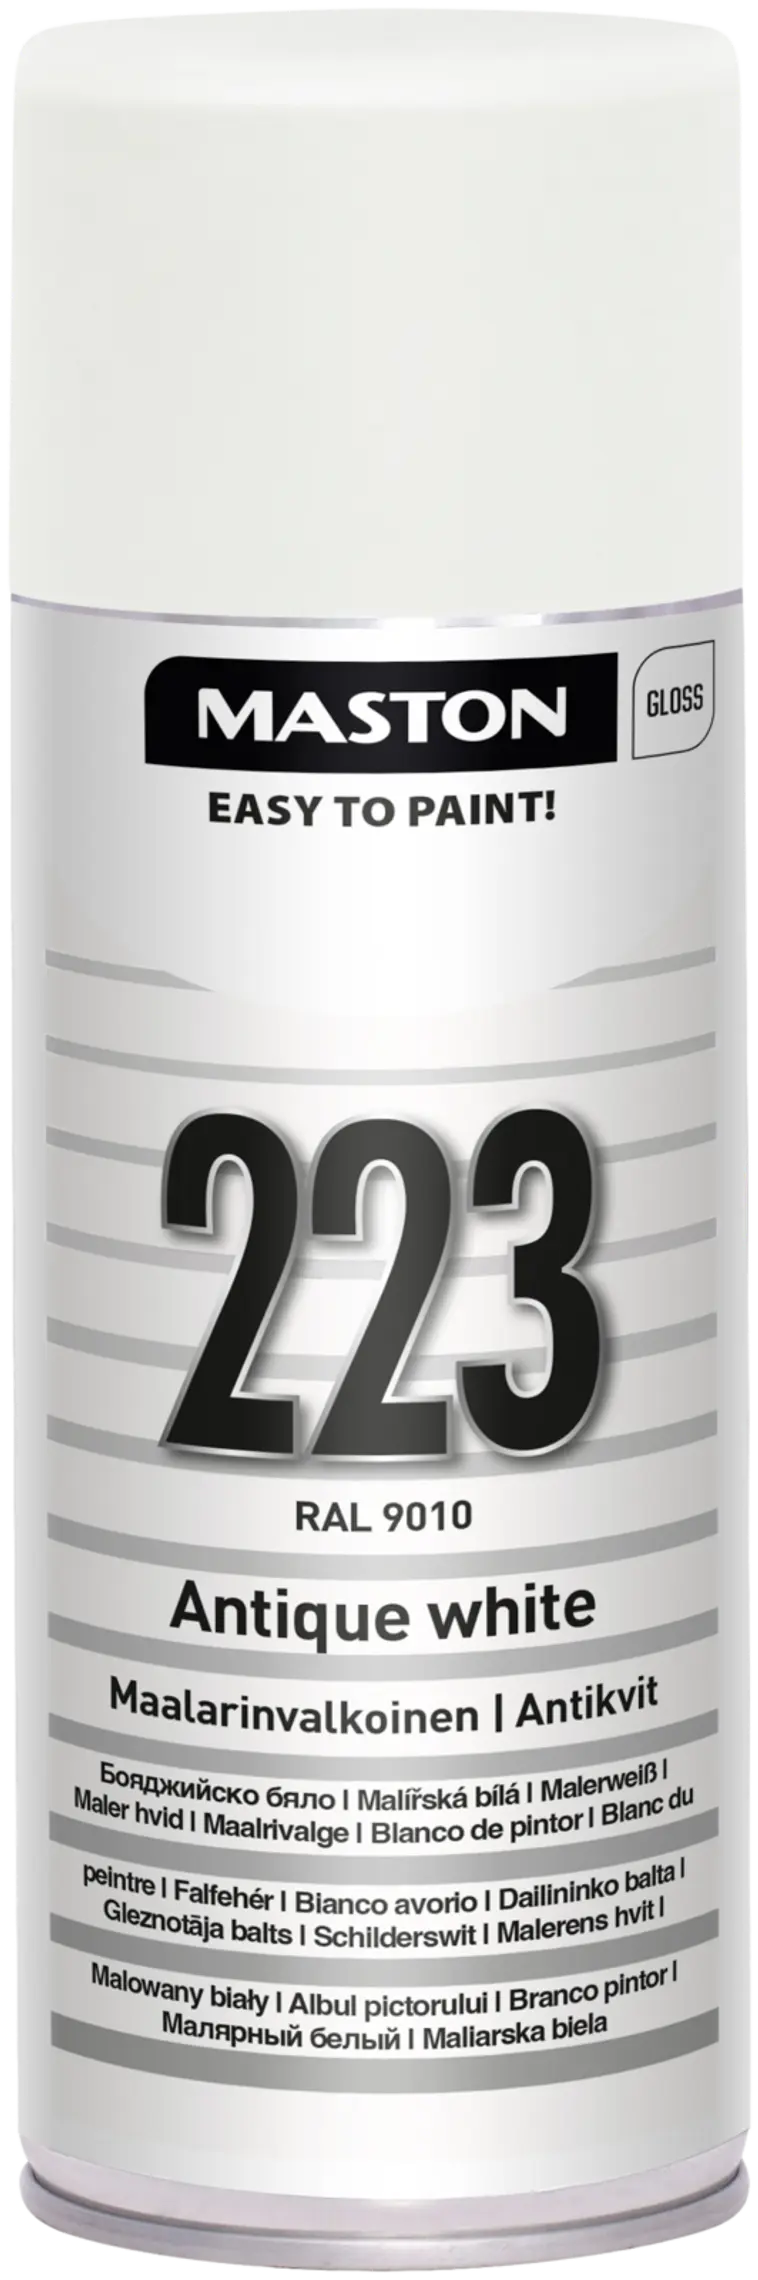 Maston ColorMix spraymaali maalarin valkoinen 223 400ml RAL 9010